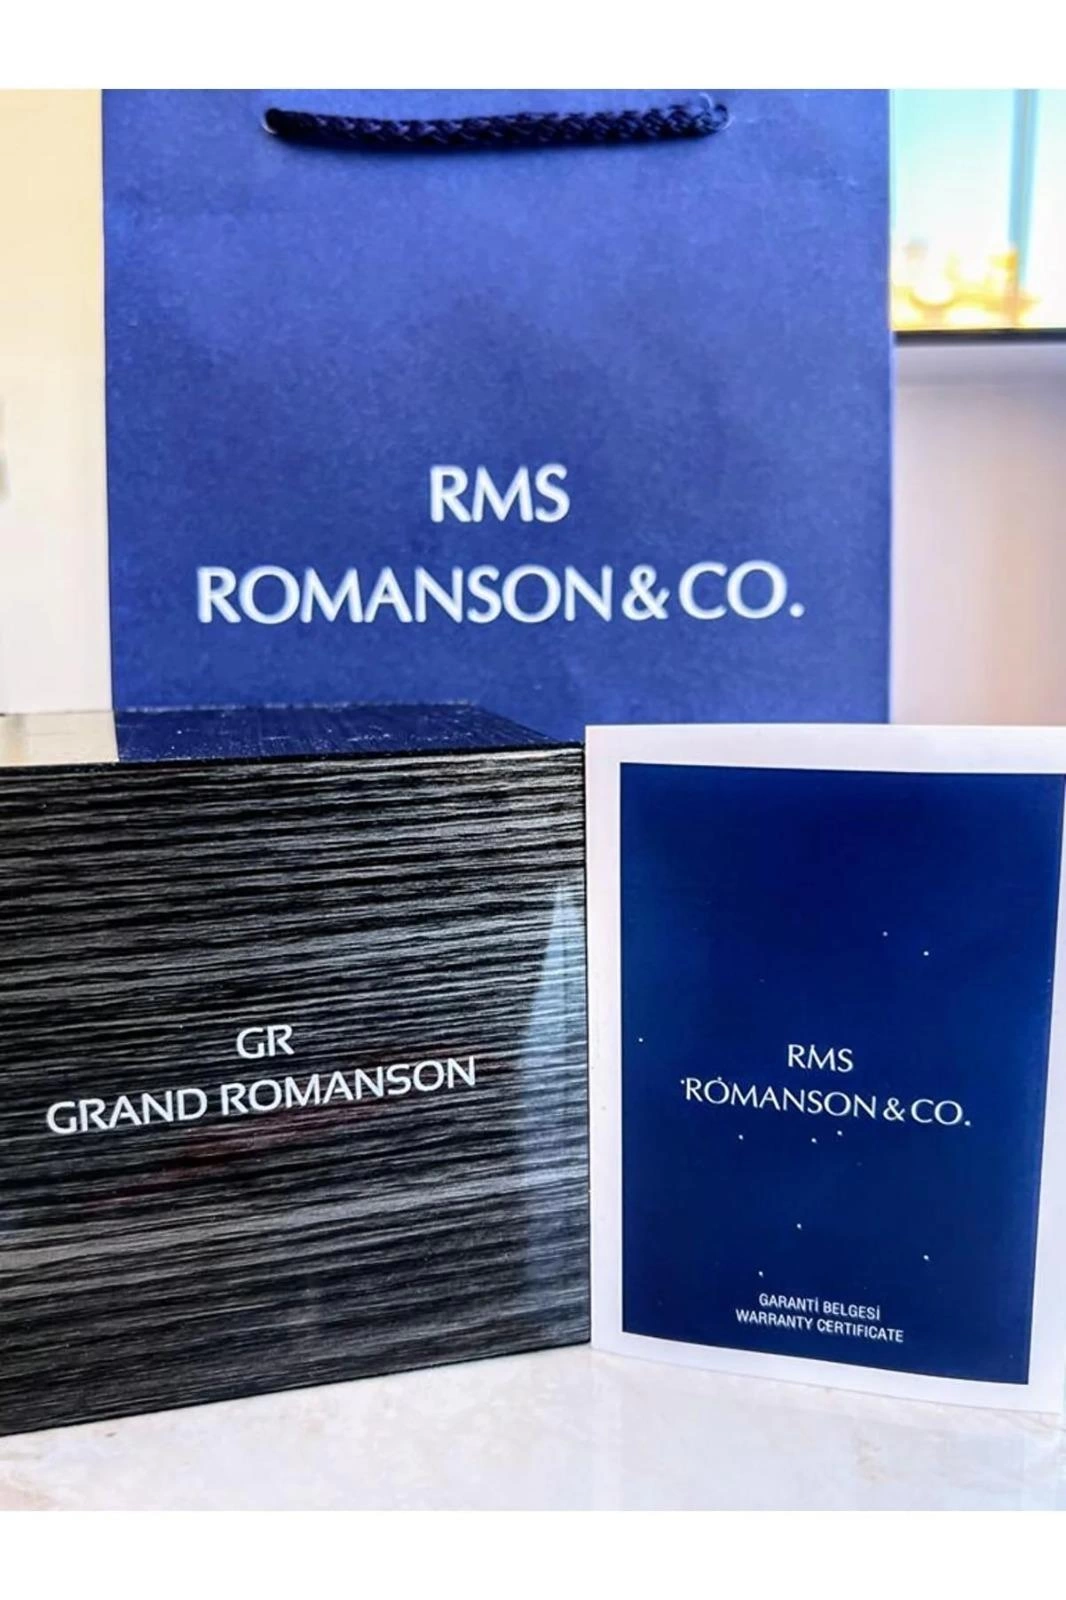 RMS.114 Romanson Özel Seri Takım Elbiseye Özel Tasarım Damat & Nişan Saati  Kararmaz Renk Atmaz